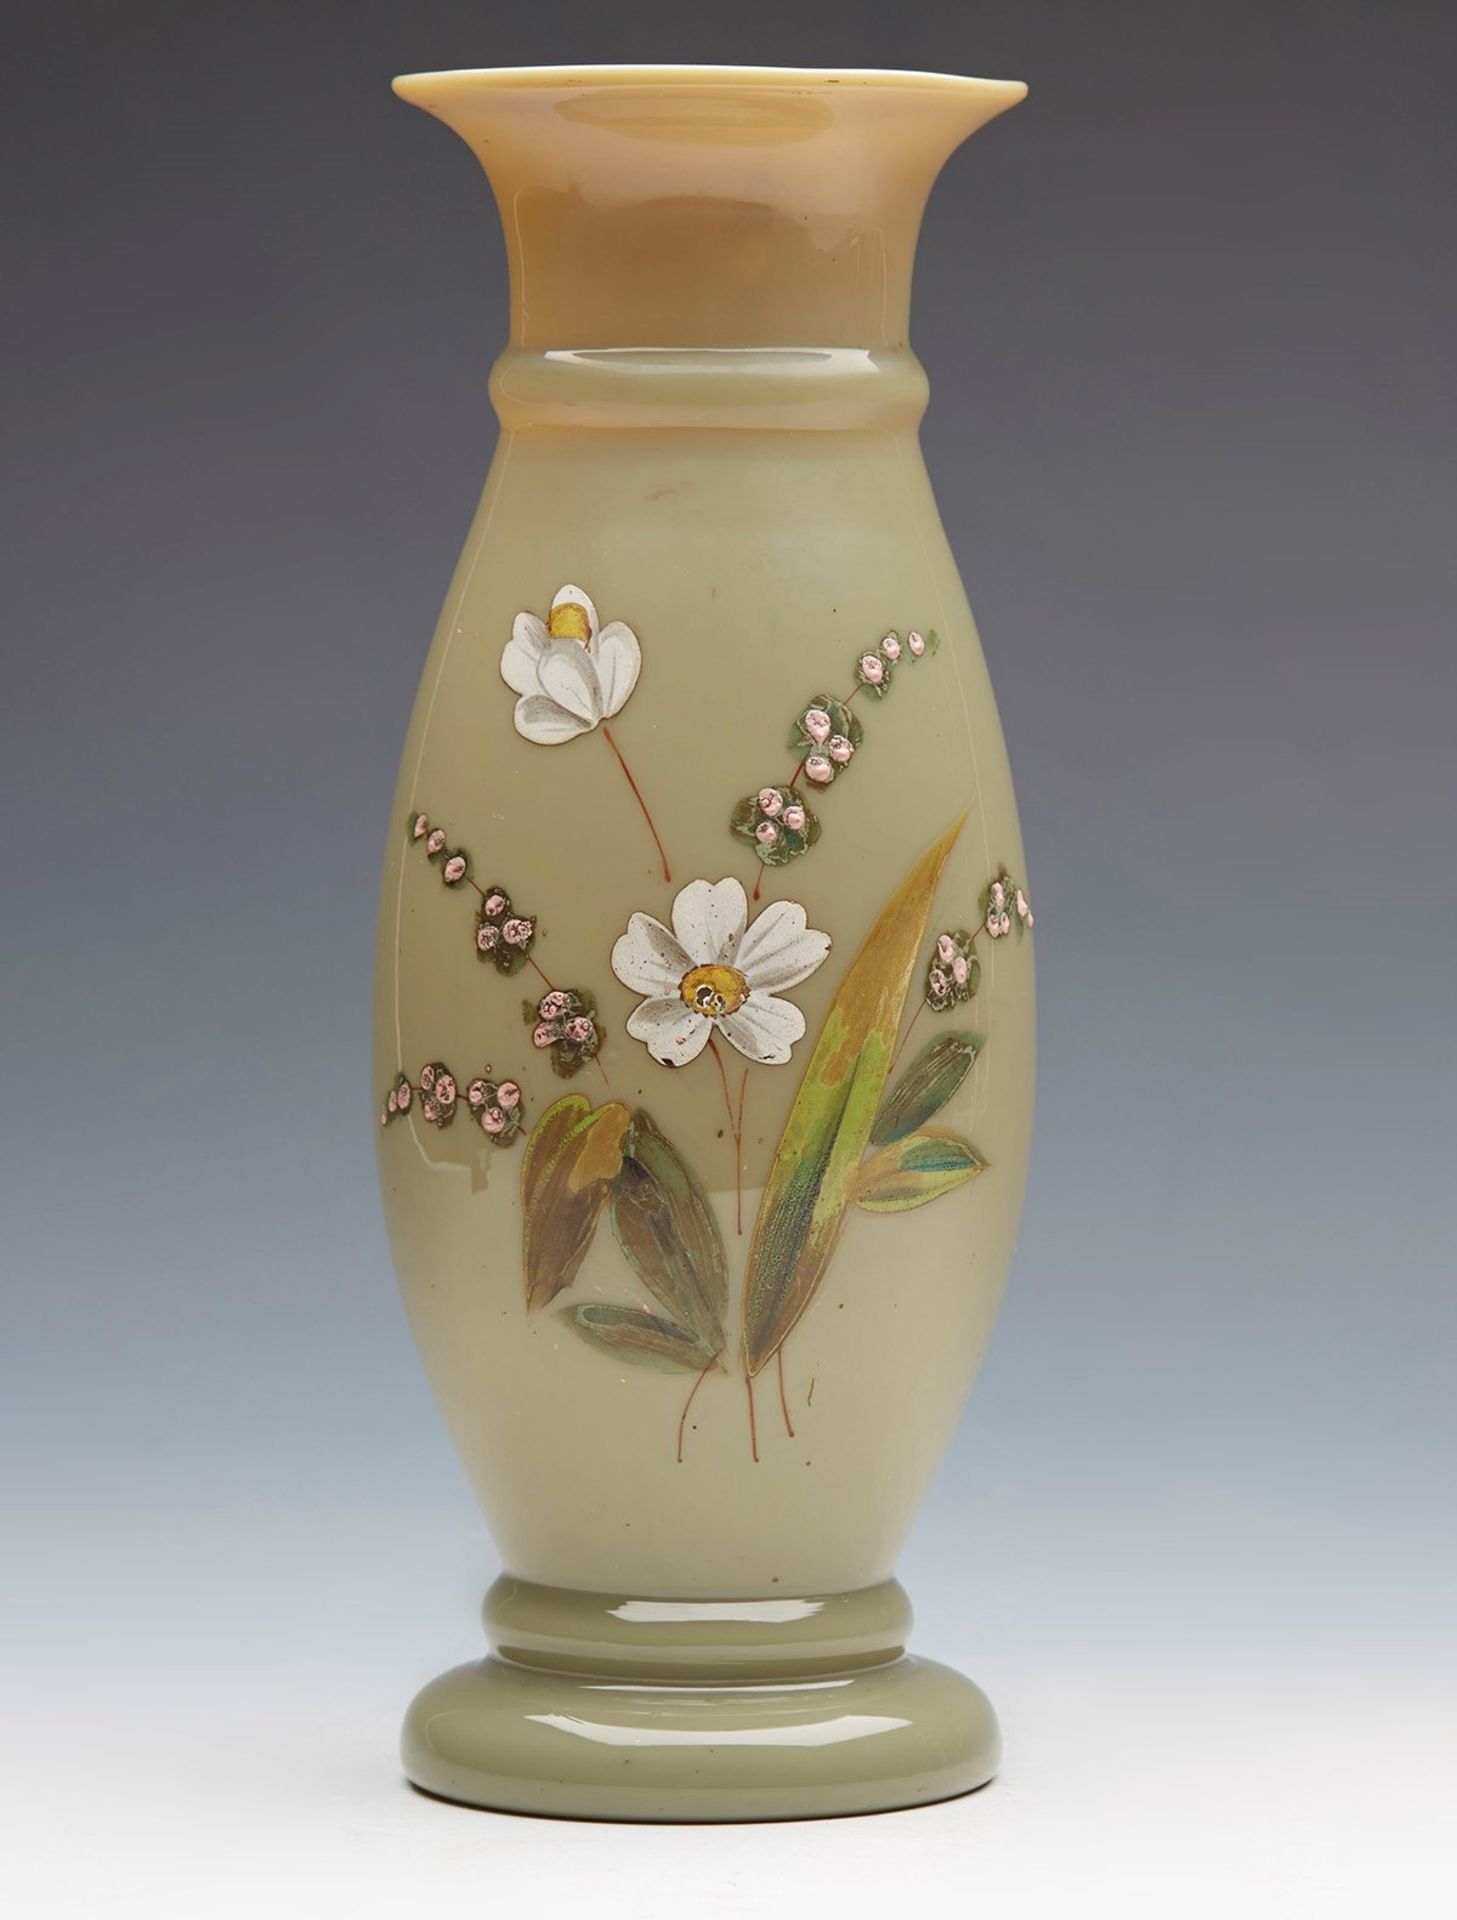 Antique Victorian Floral Enamel Painted Glass Vase 19Th C.